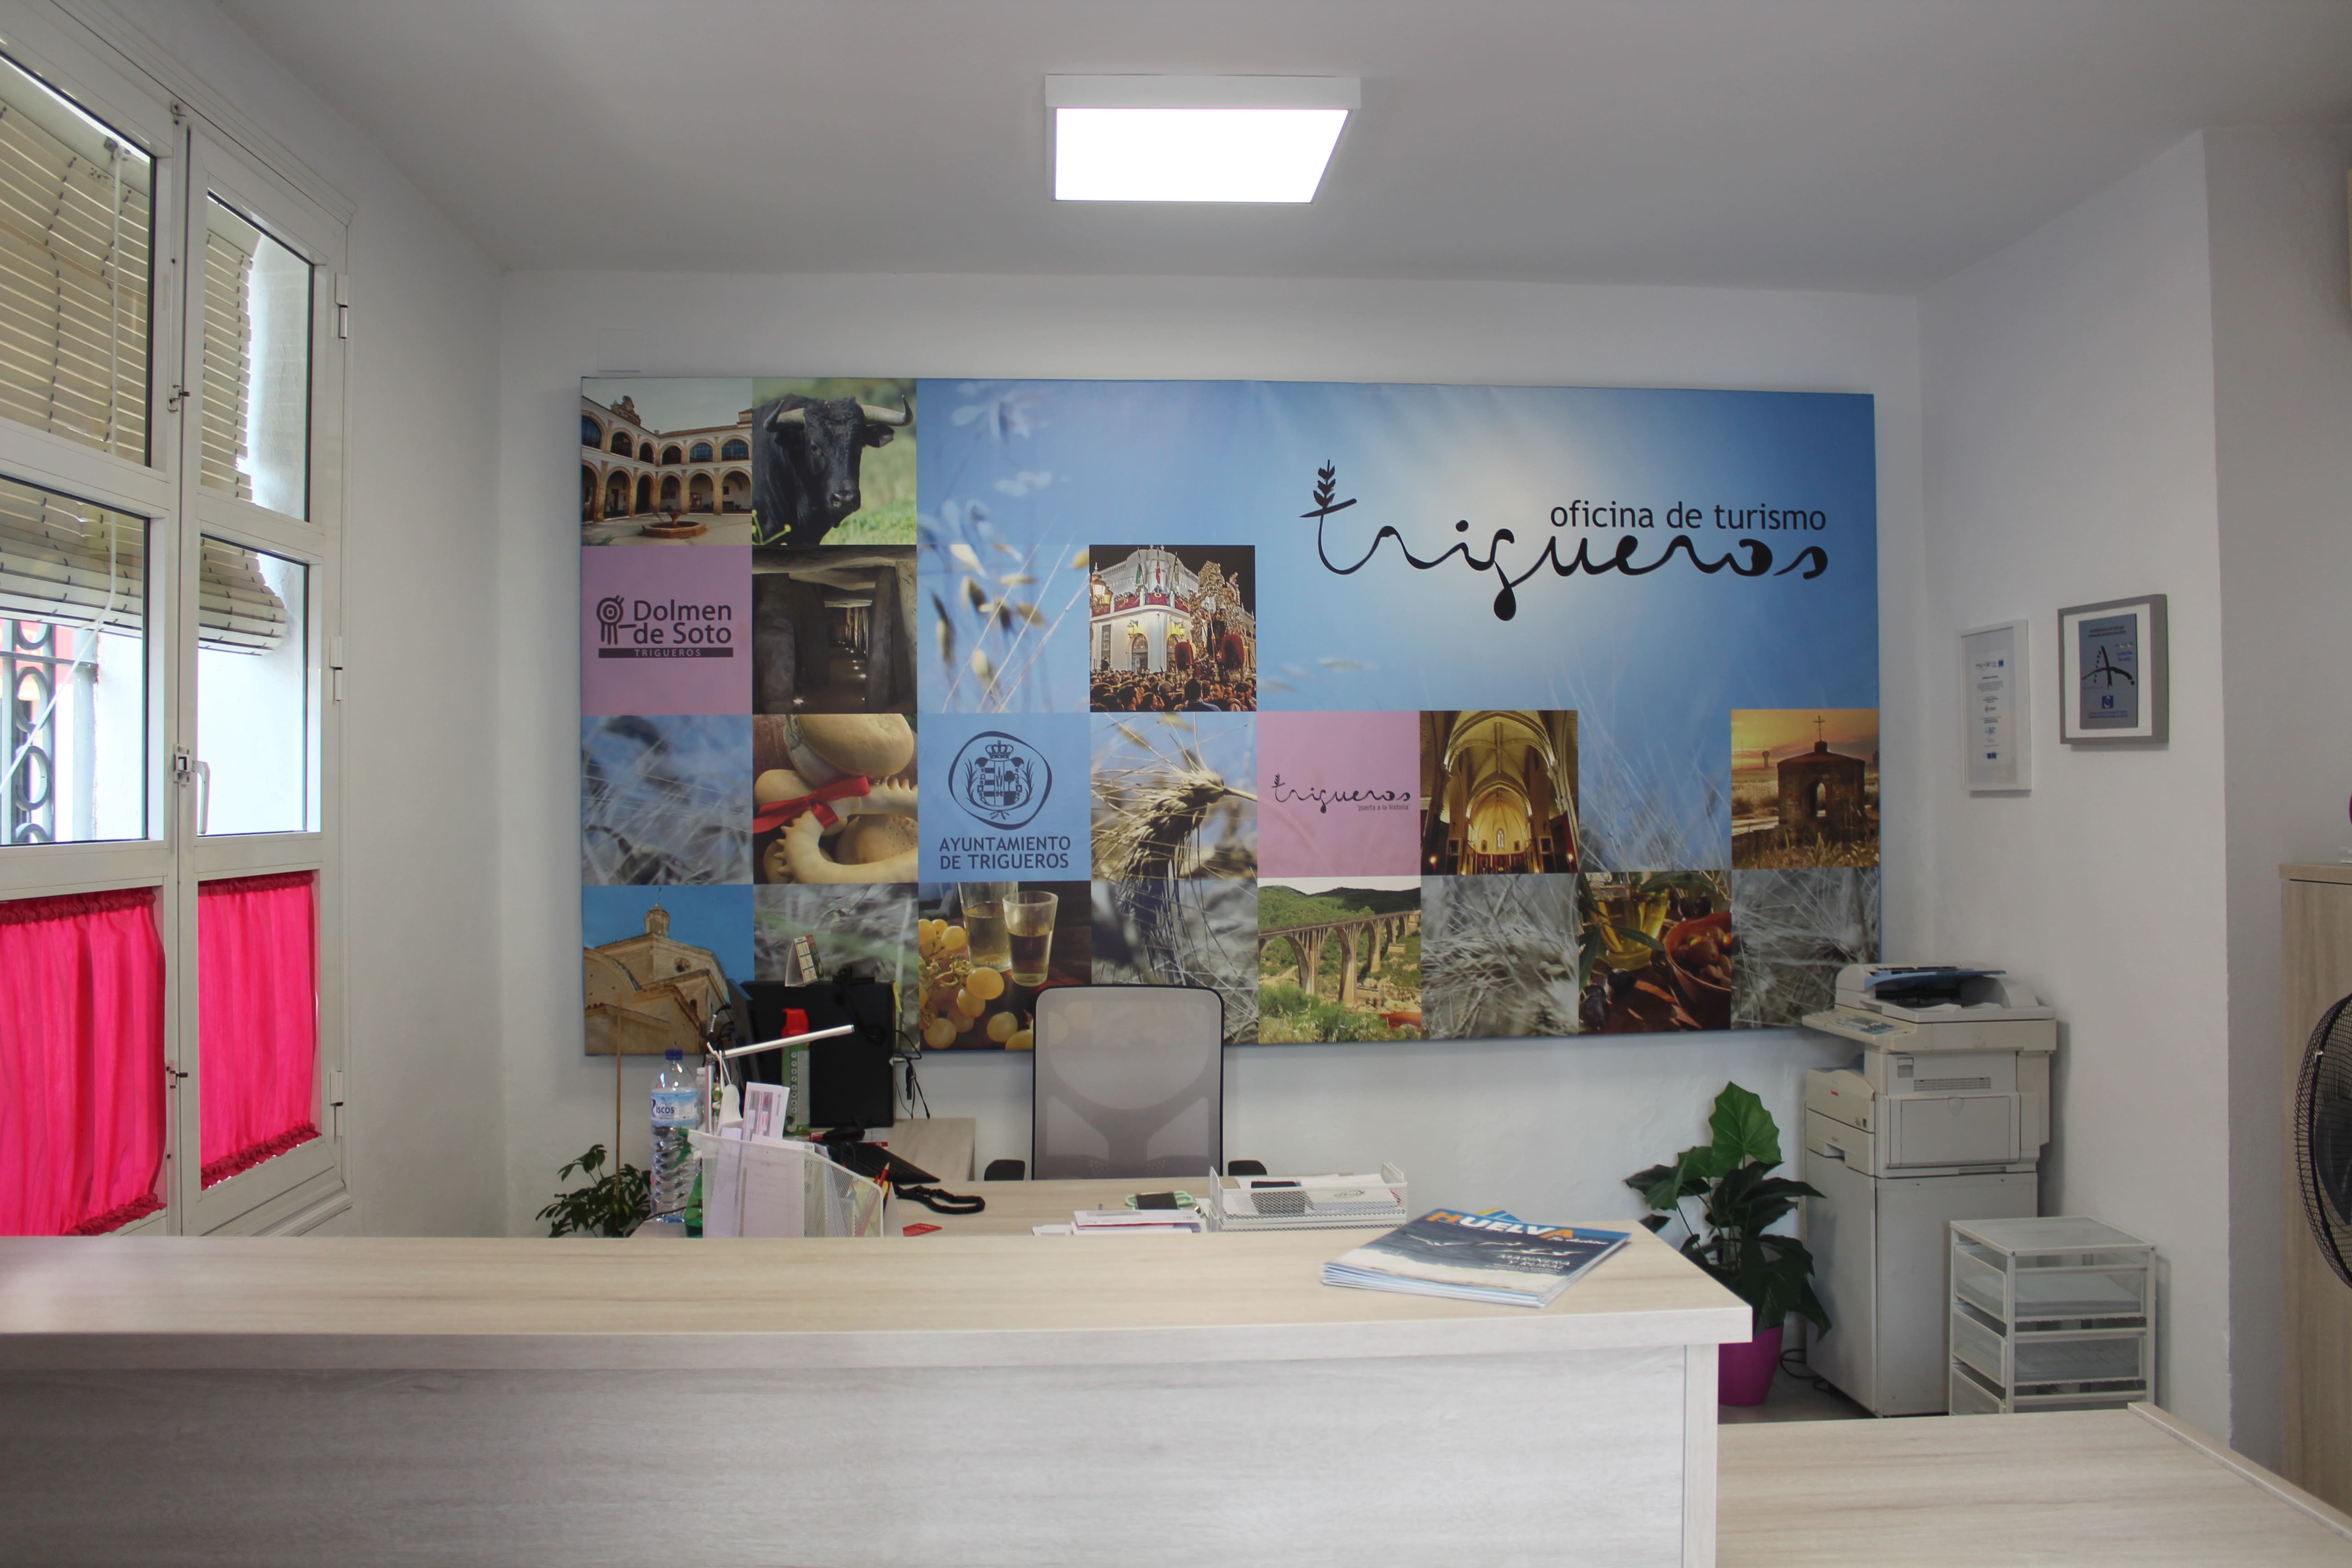 Office du Tourisme de Trigueros